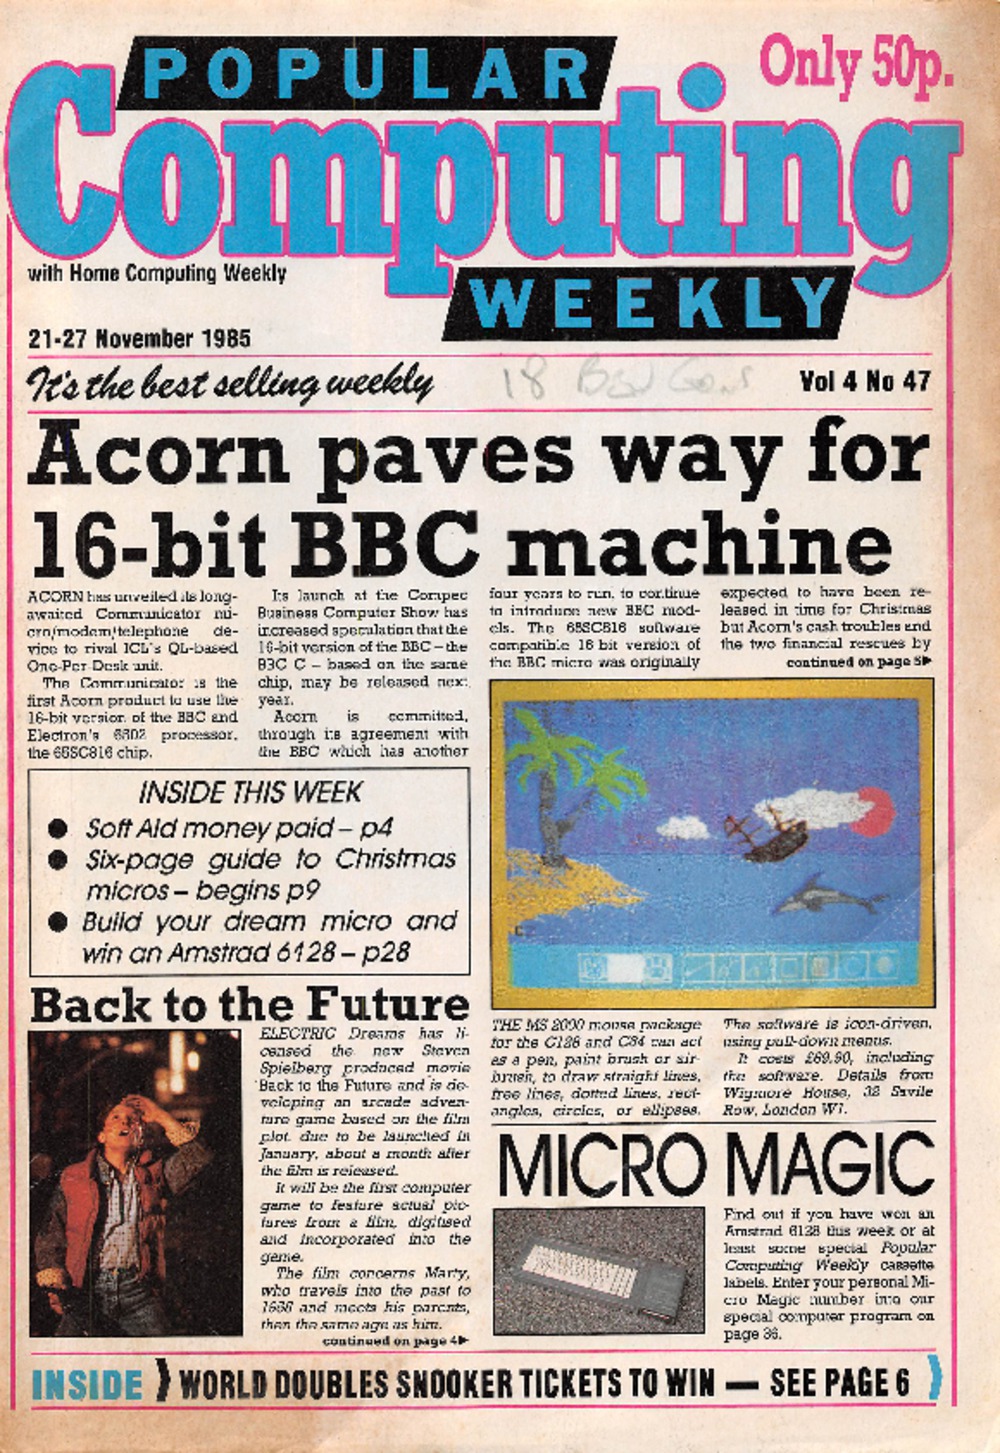 Article: Popular Computing Weekly Vol 4 No 47 - 21-27 November 1985